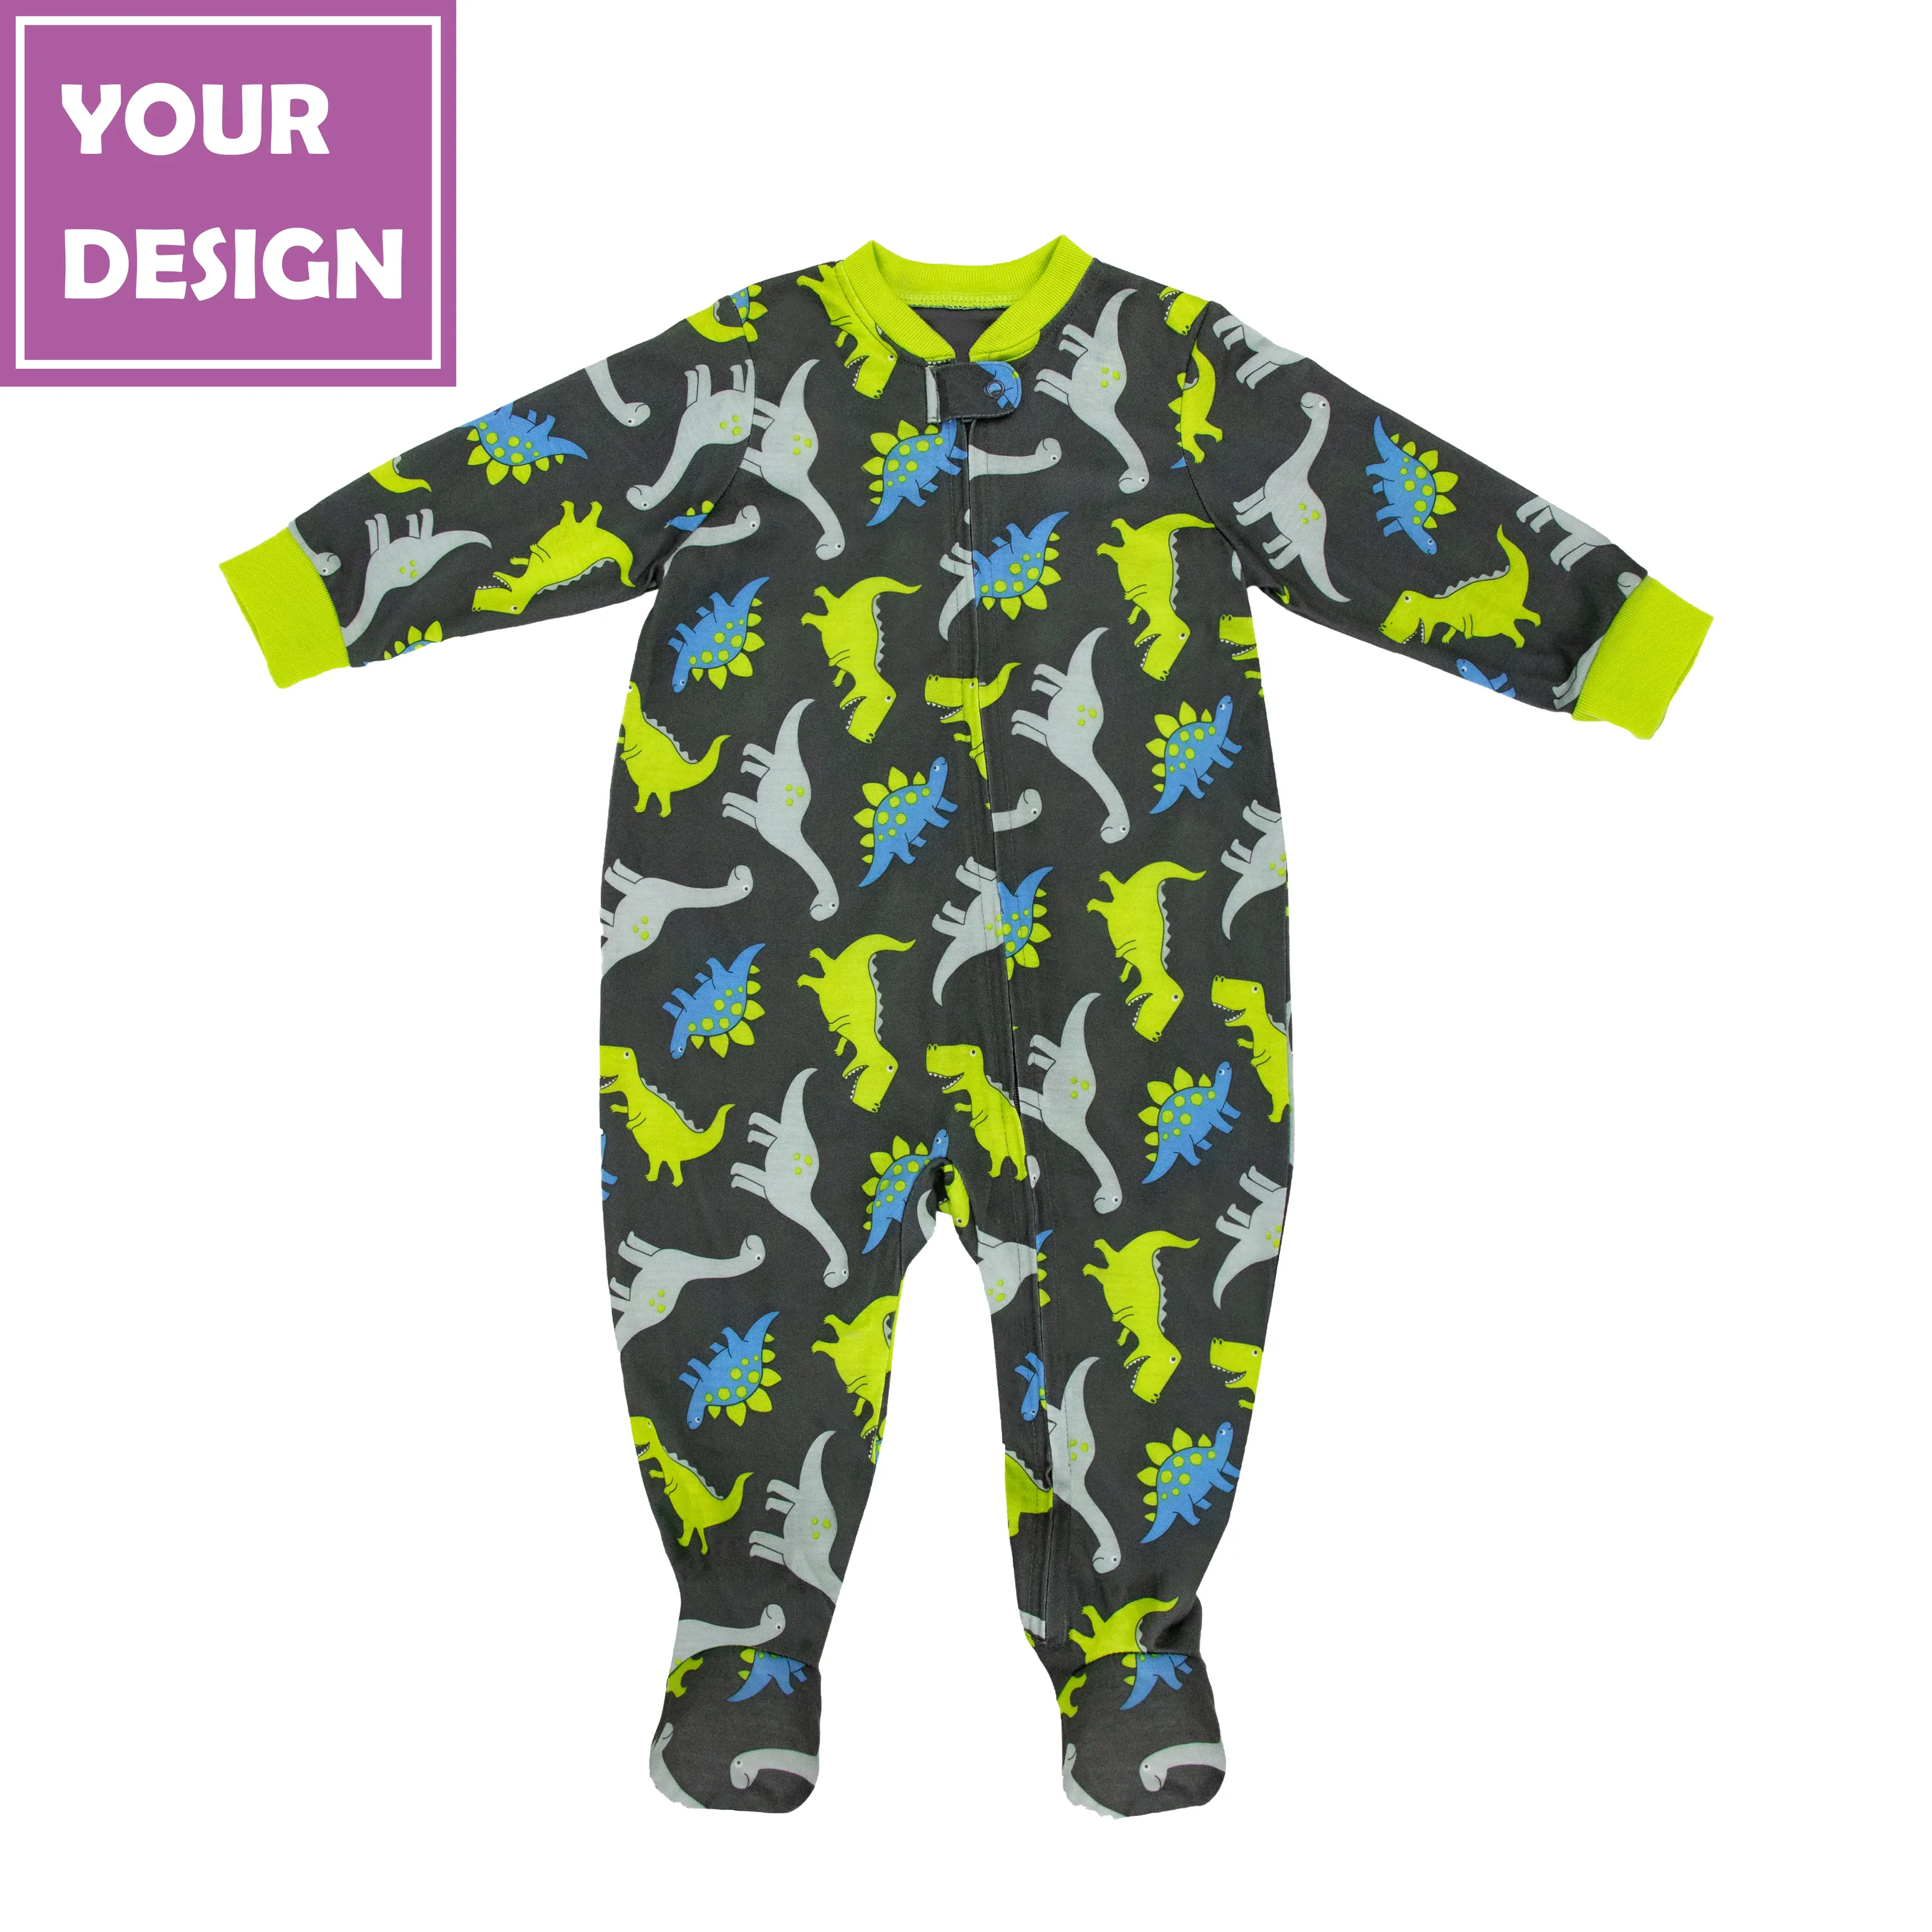 Производитель одежды JOYUAN BR190809 Детский комбинезон-мальчик темно-серый динозавр одежда на заказ детские мягкие пижамы Мультяшные Комбинезоны для игр